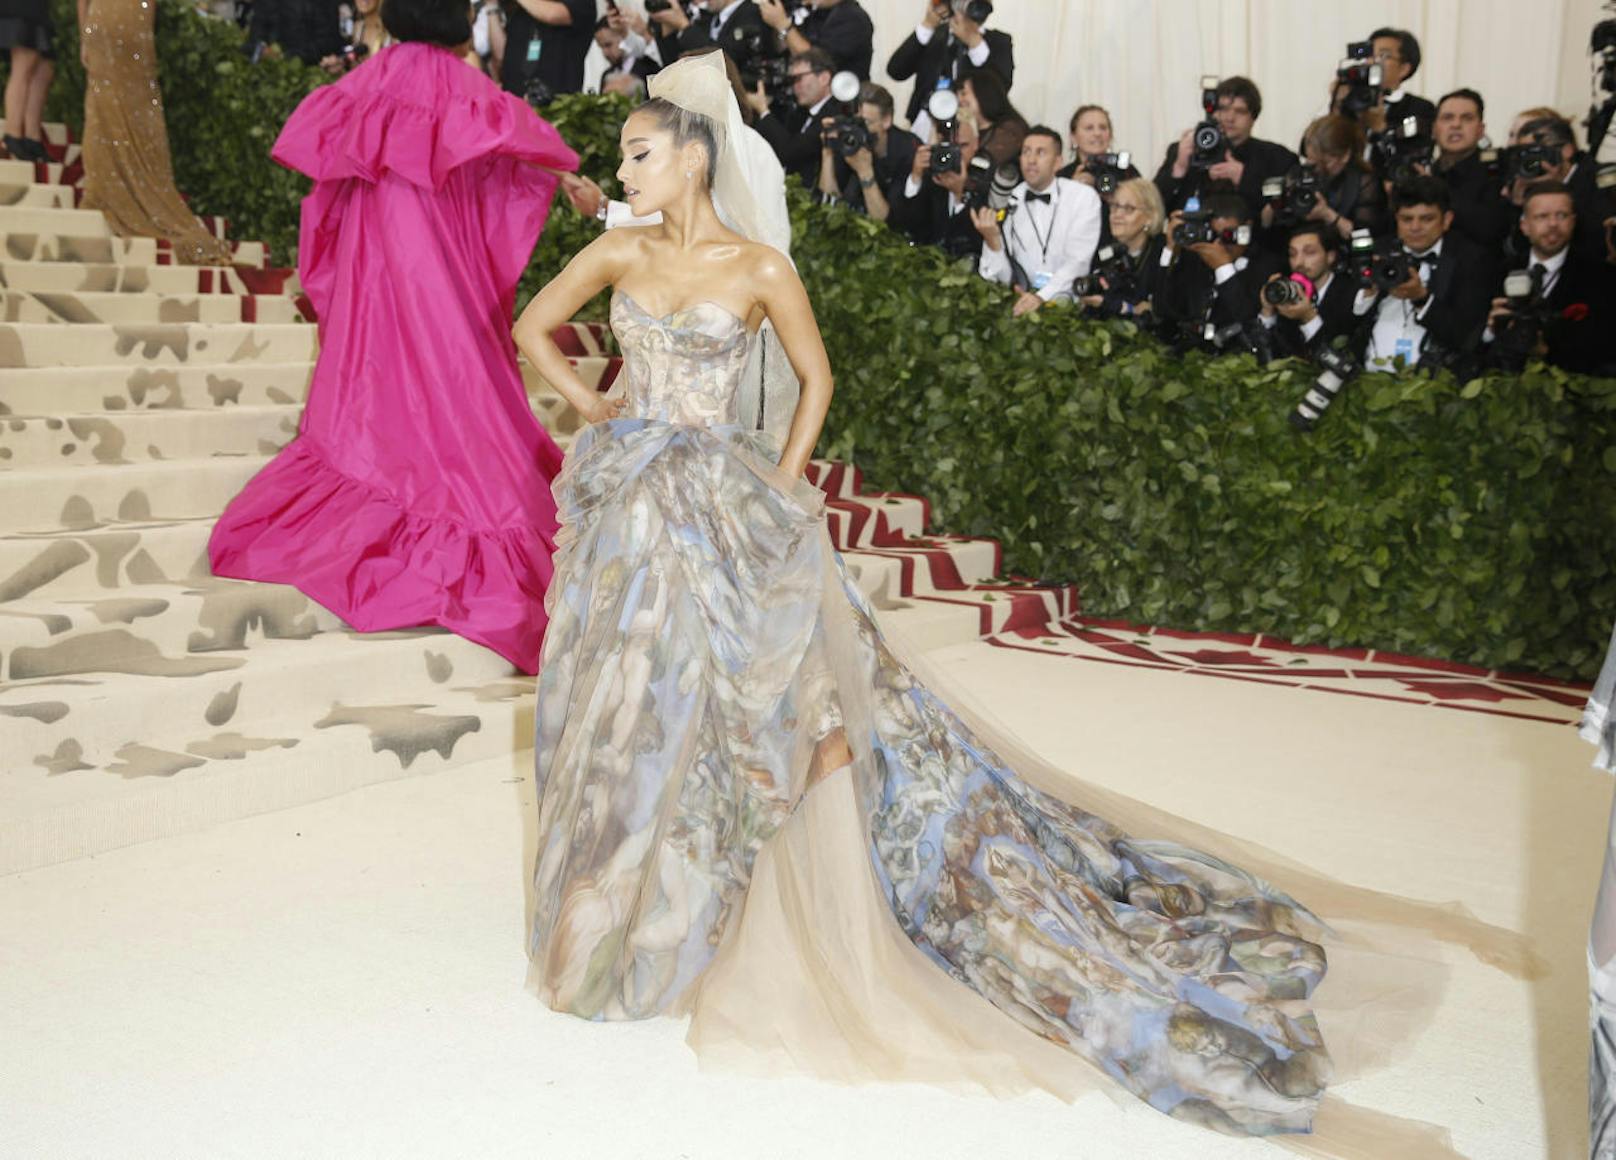 Sängerin Ariana Grande besucht die Met Gala in einem Kleid von Vera Wang, auf dem die Deckenmalerei Michelangelols aus der Sixtinischen Kapelle abgebildet ist.